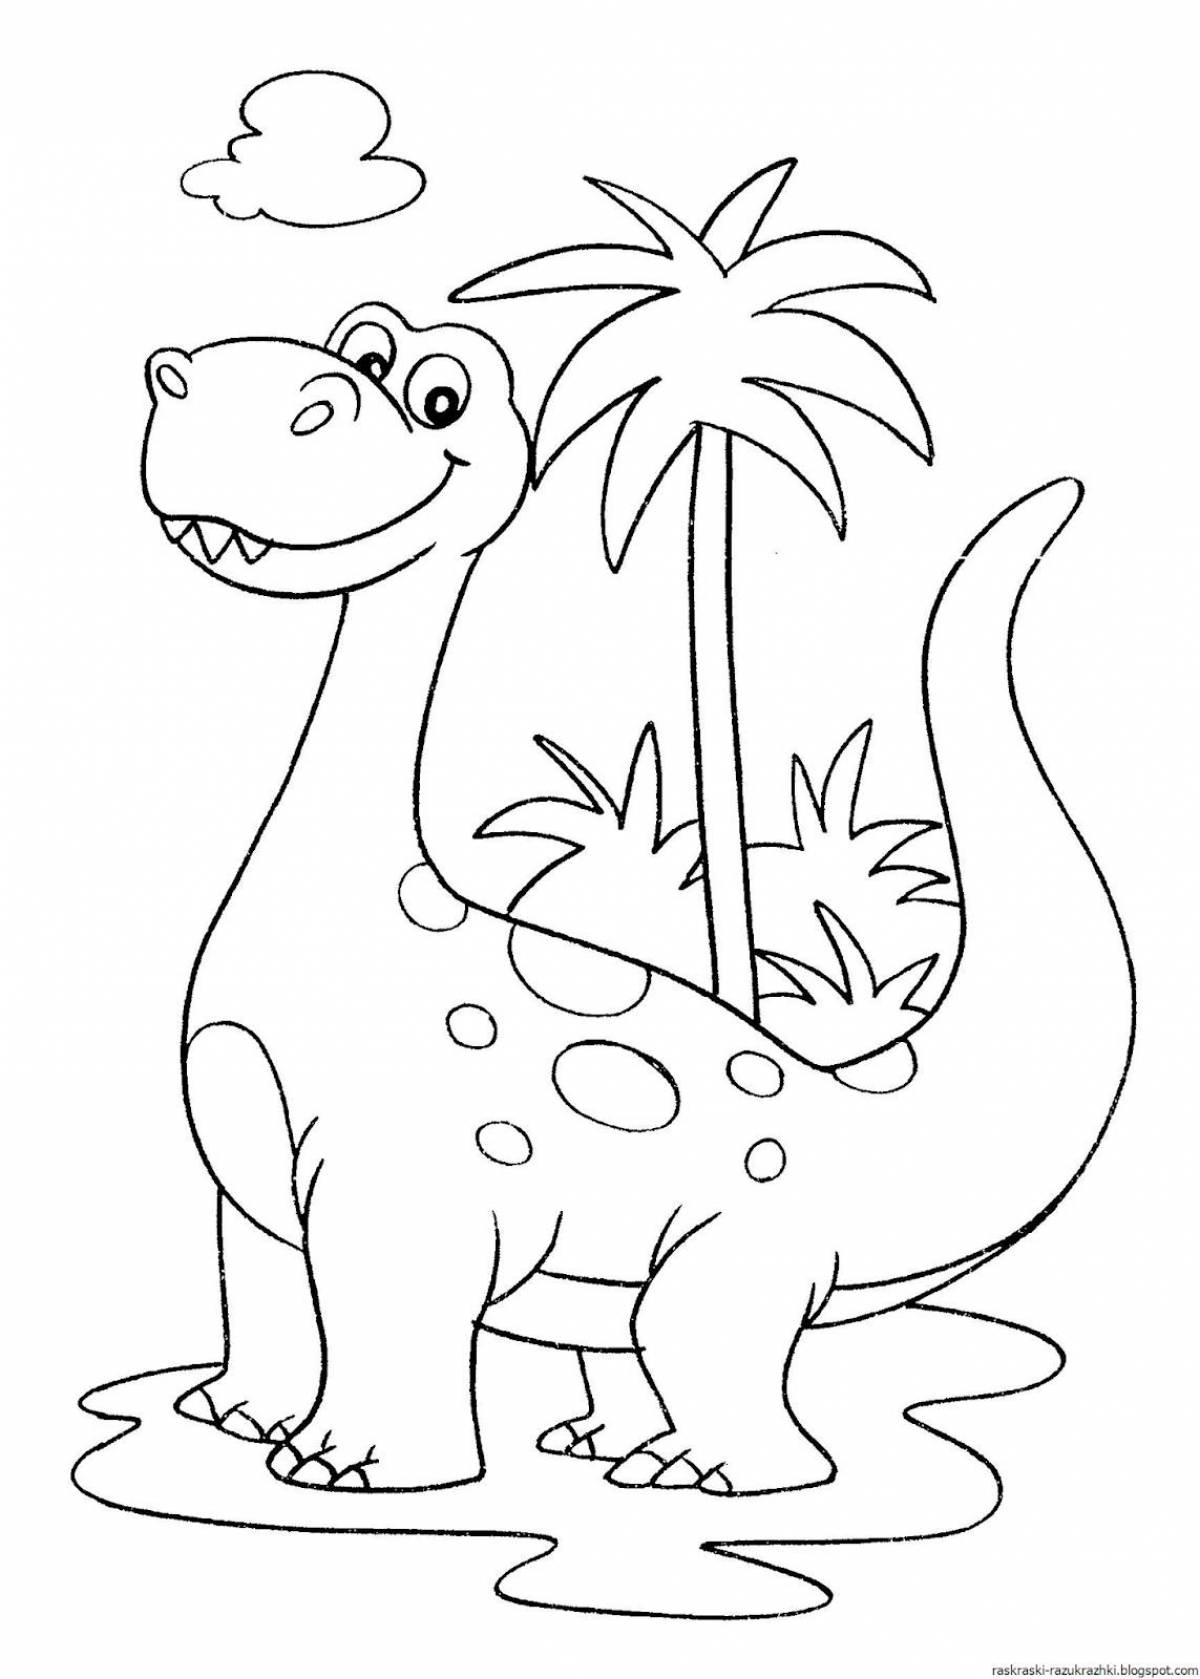 Humorous dinosaur coloring book for kids